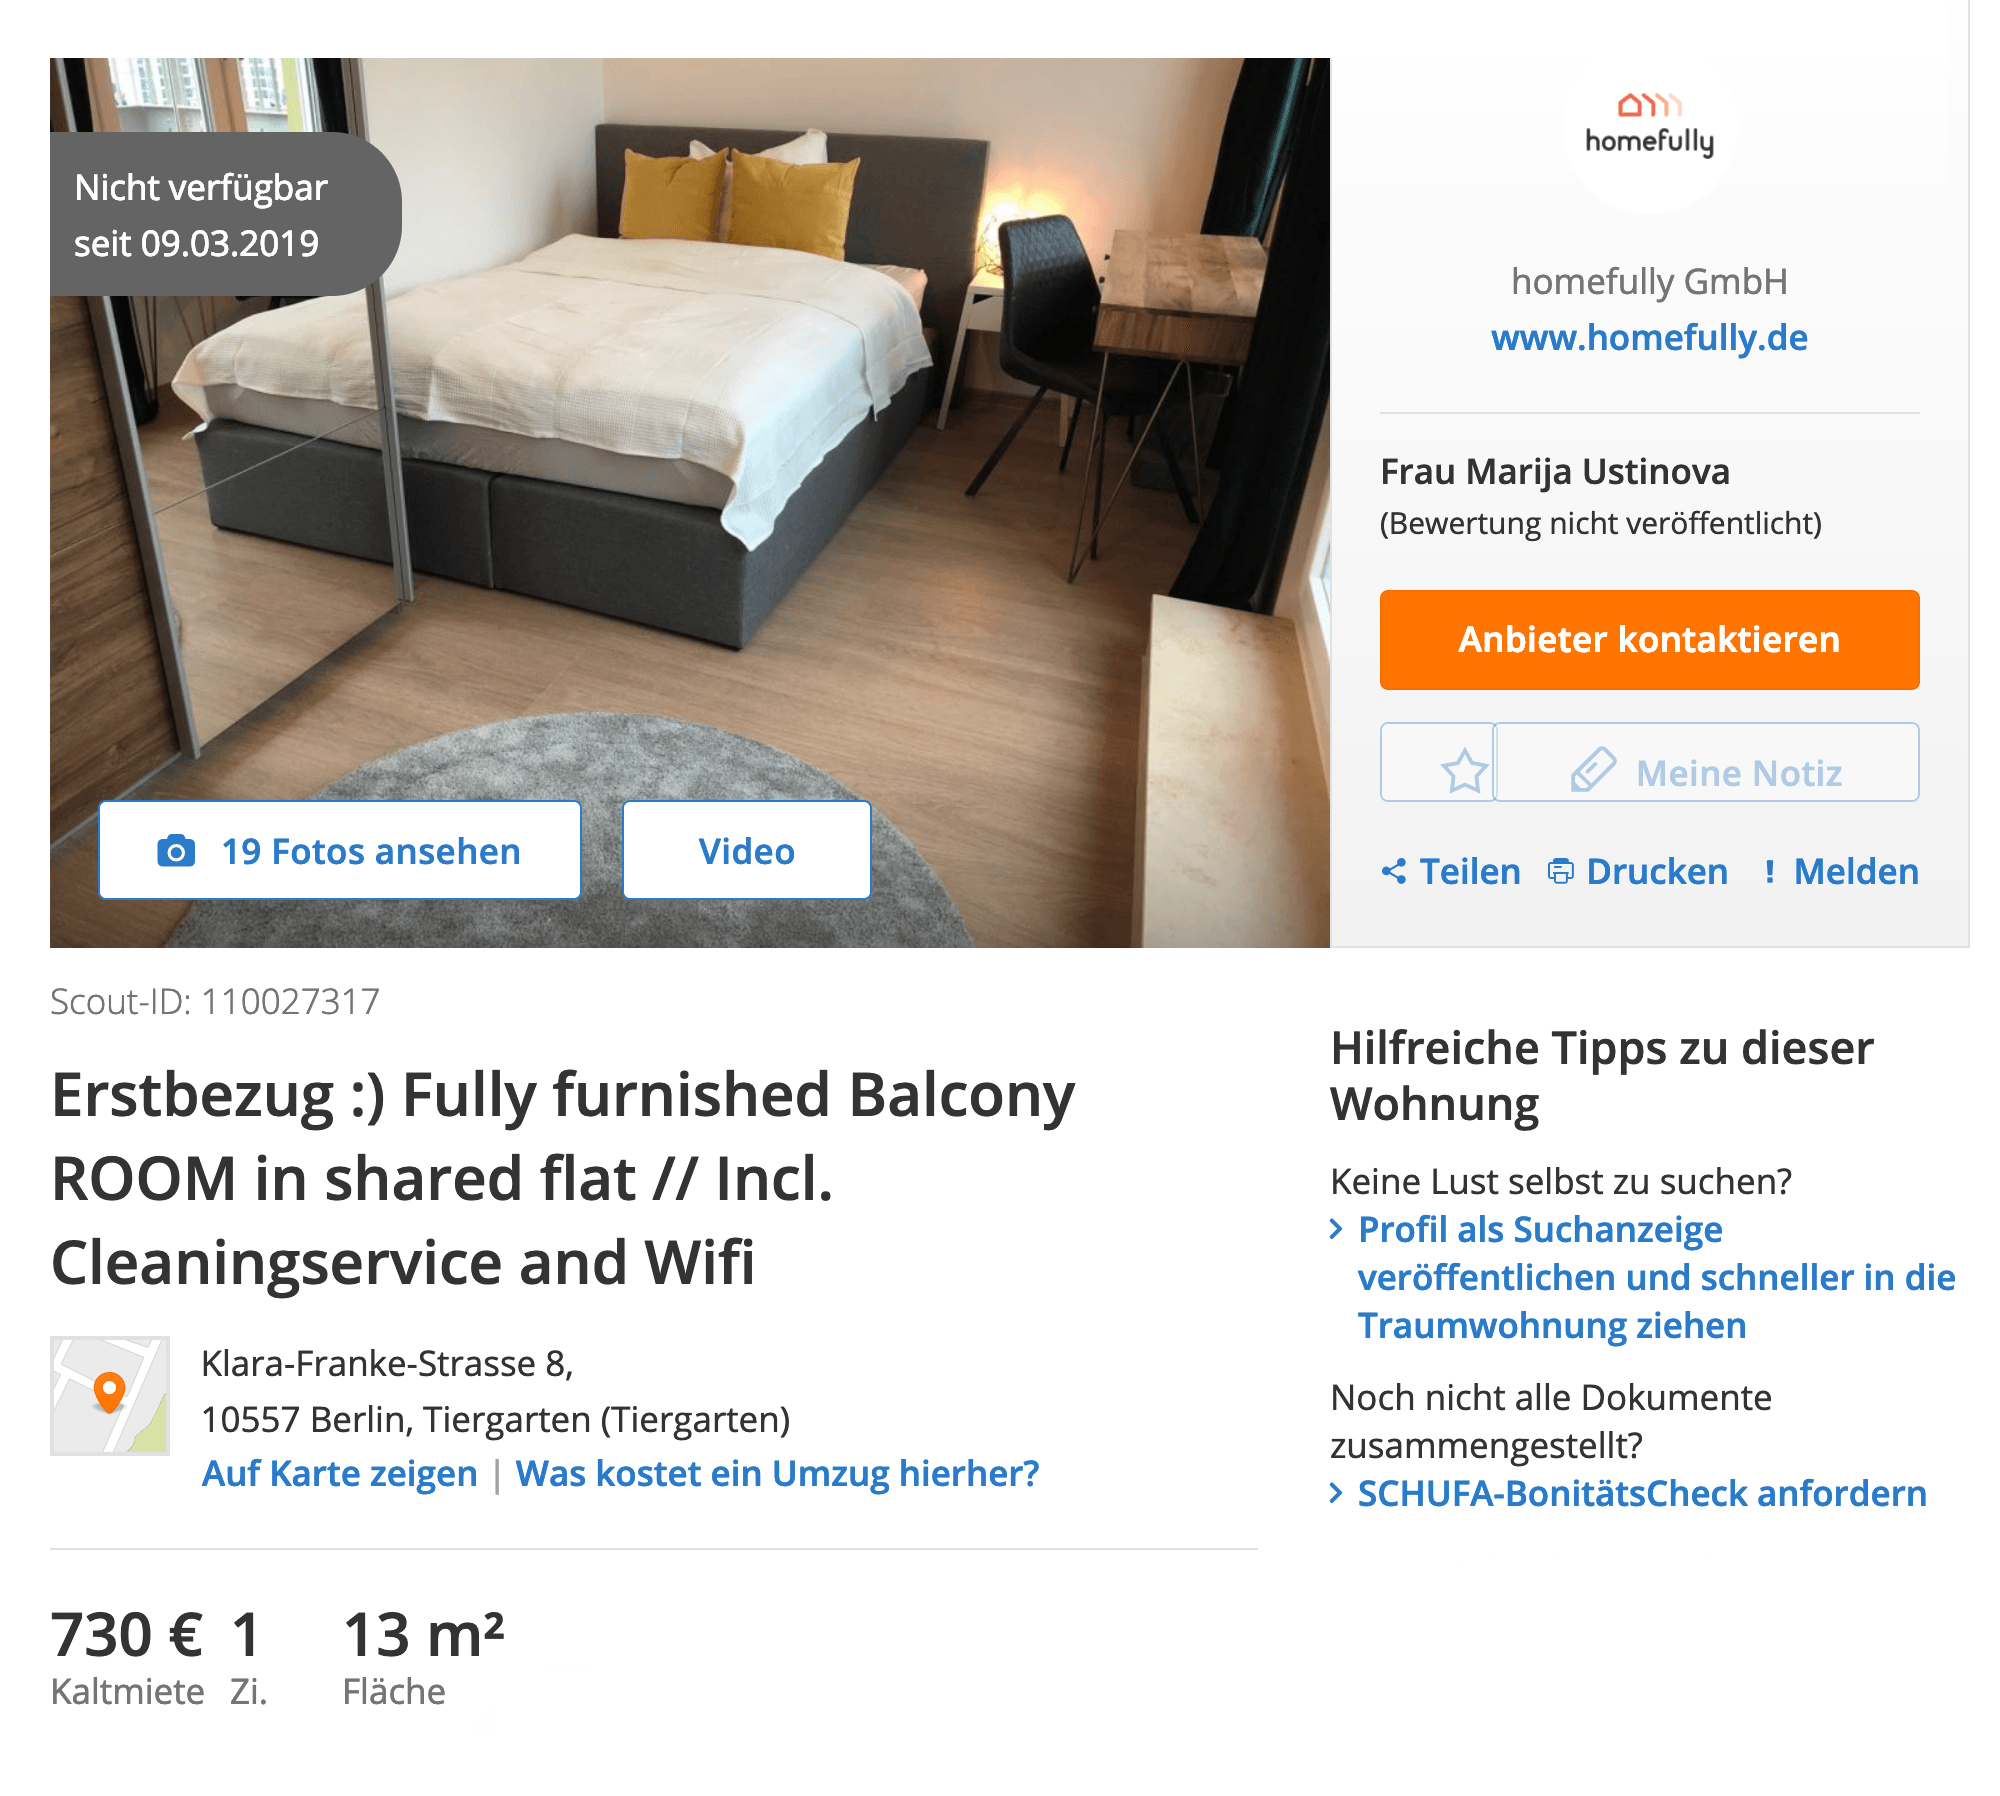 Комната в аренду за 730 € (54 460 ₽) в месяц